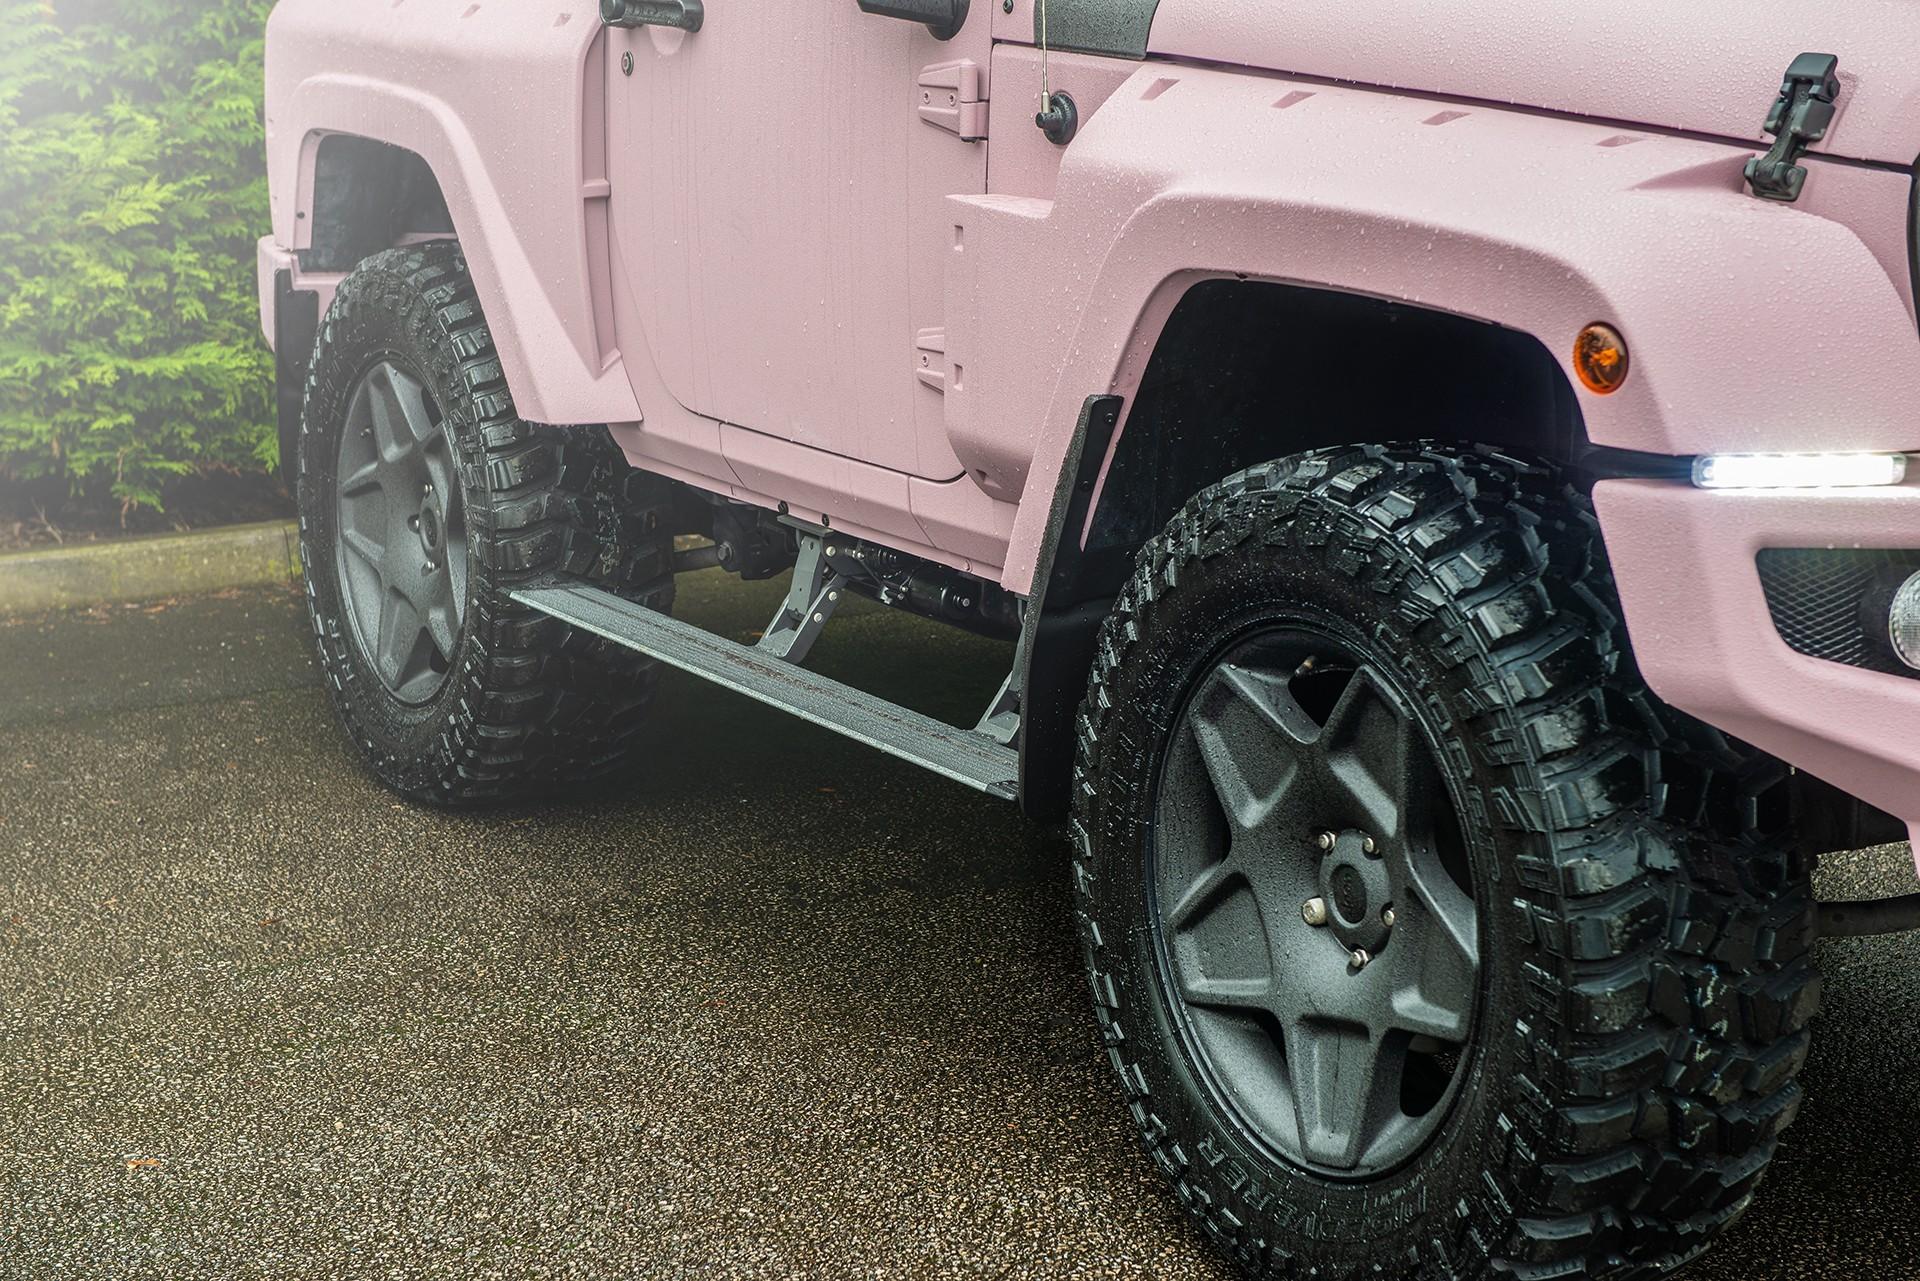 ให้มันเป็นสีชมพู! Pink Jeep Wrangler RHD จากฝีมือการรังสรรค์ของ Kahn Design